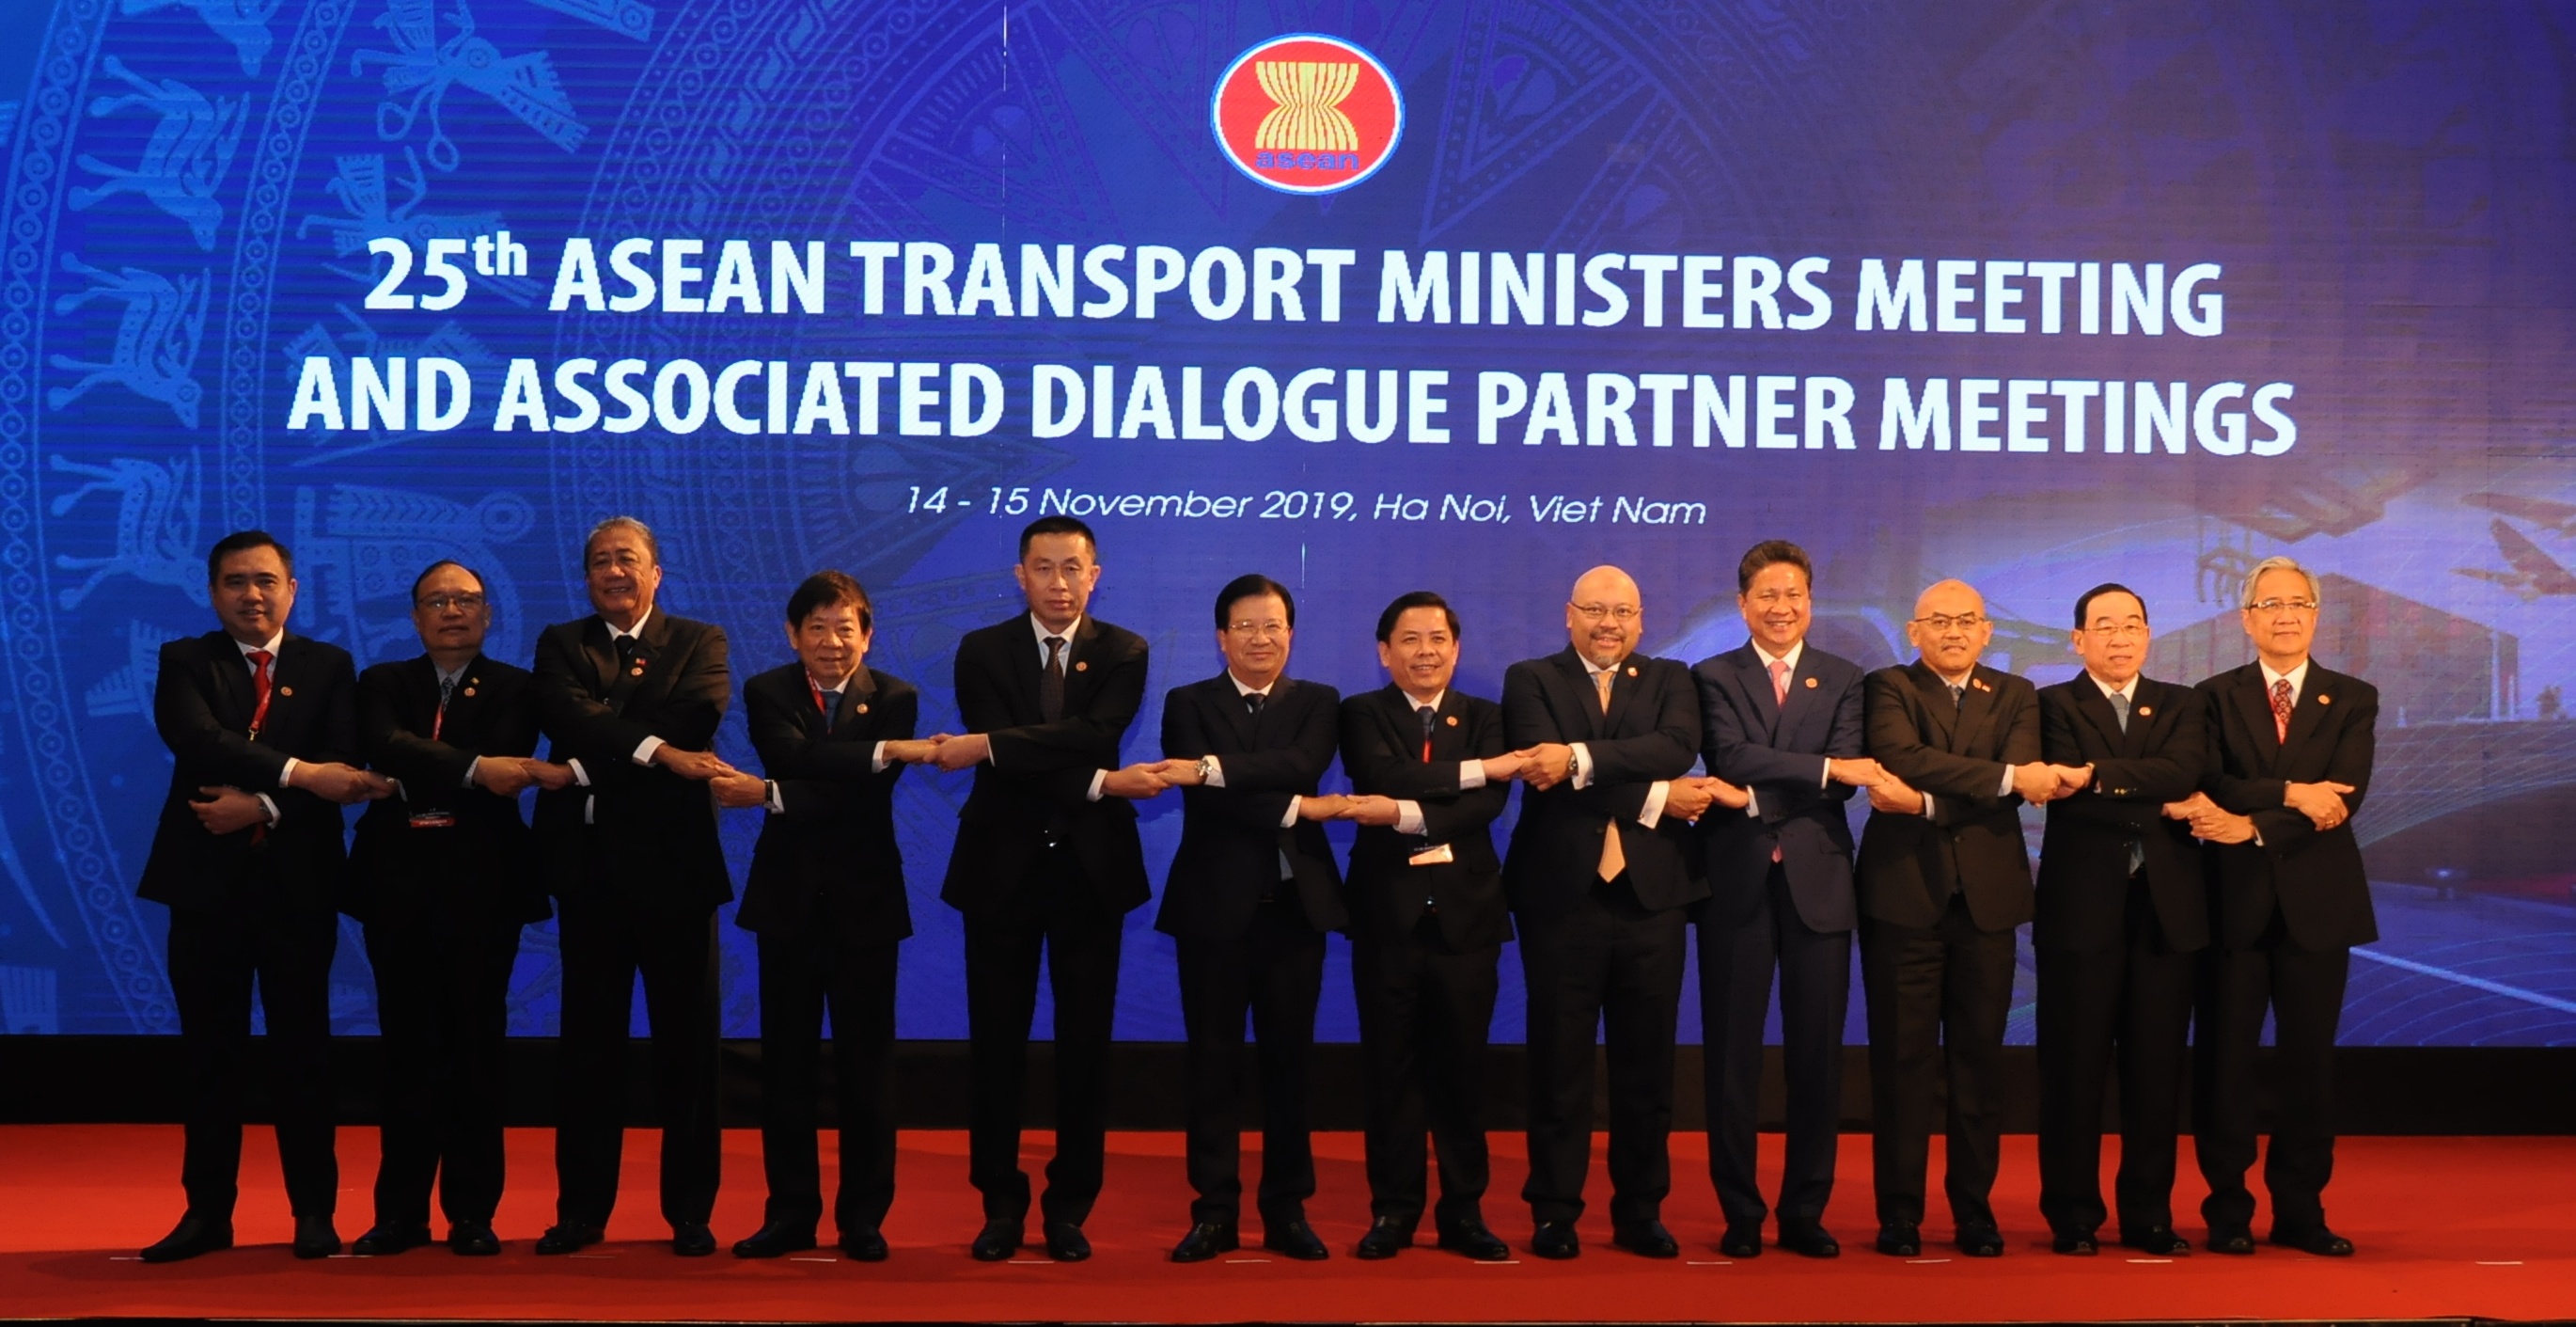 Đã có nhiều sáng kiến, đề xuất và cơ chế hợp tác trong tất cả các lĩnh vực như hàng không, hàng hải, đường bộ, đường sắt, tạo thuận lợi vận tải đã được ngành GTVT các nước tích cực triển khai, nhằm thúc đẩy giao thương, tăng cường kết nối giữa các nước thành viên ASEAN nói riêng và giữa ASEAN với thế giới.